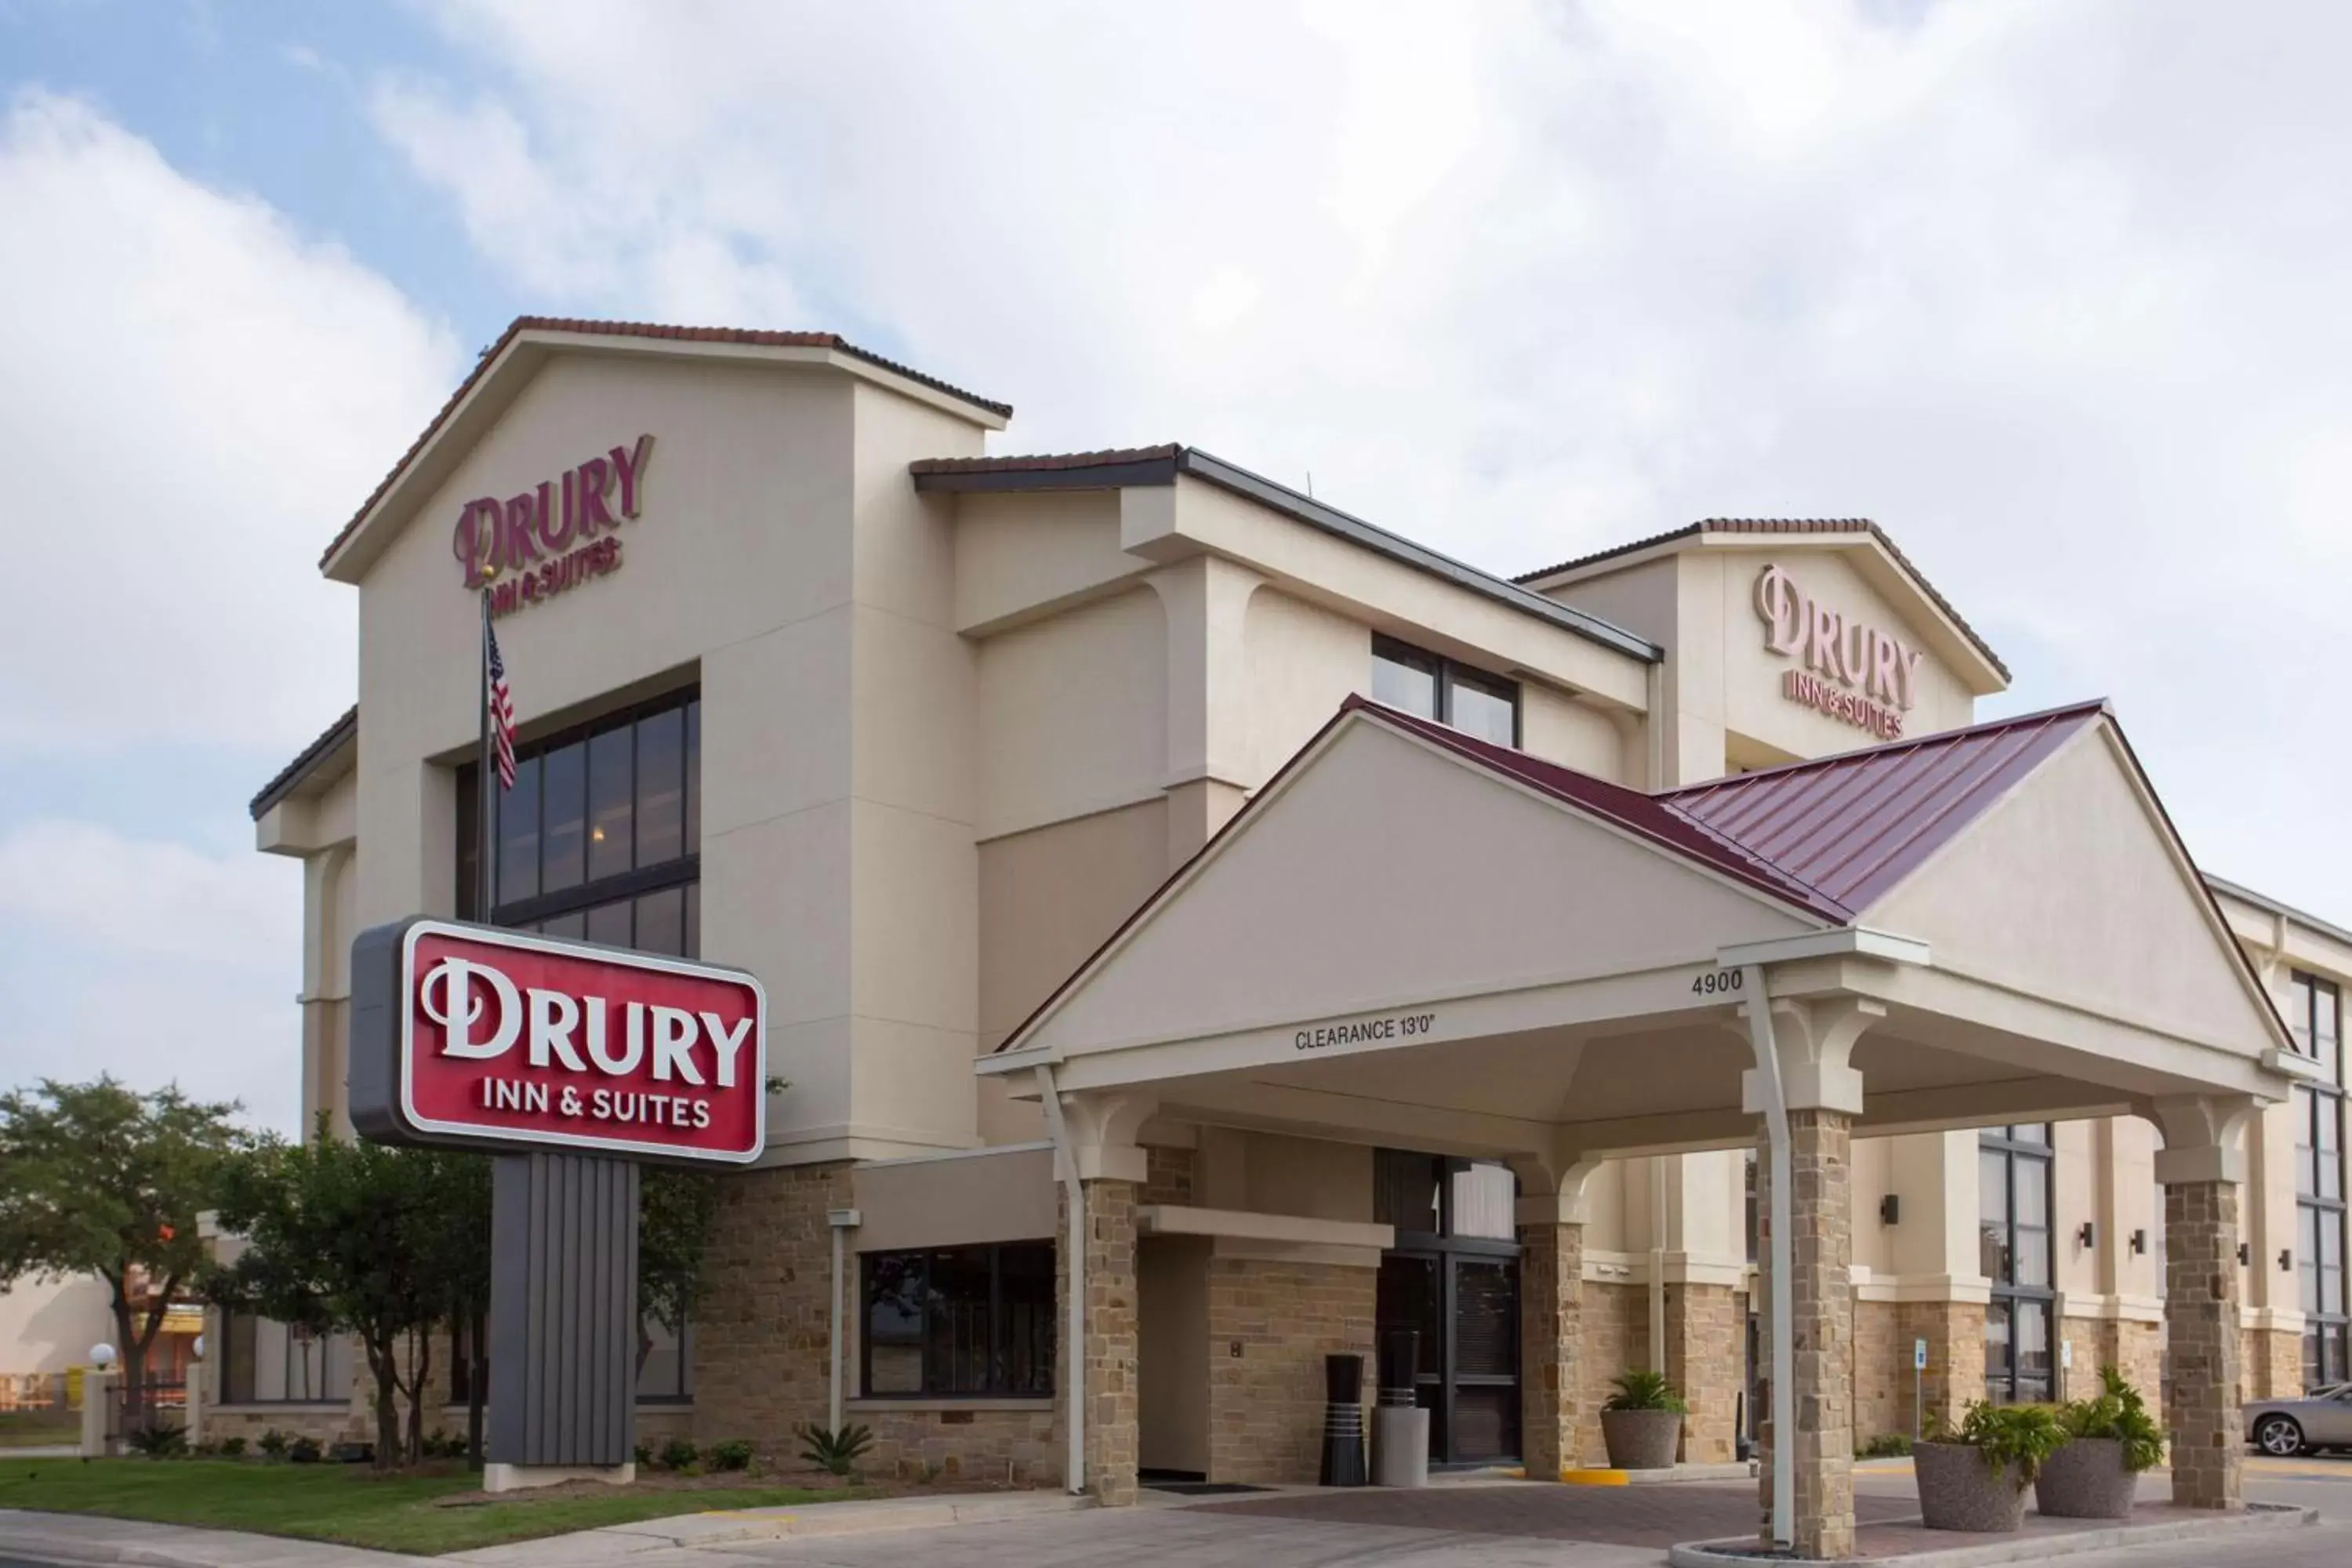 Property building in Drury Inn & Suites San Antonio Northeast